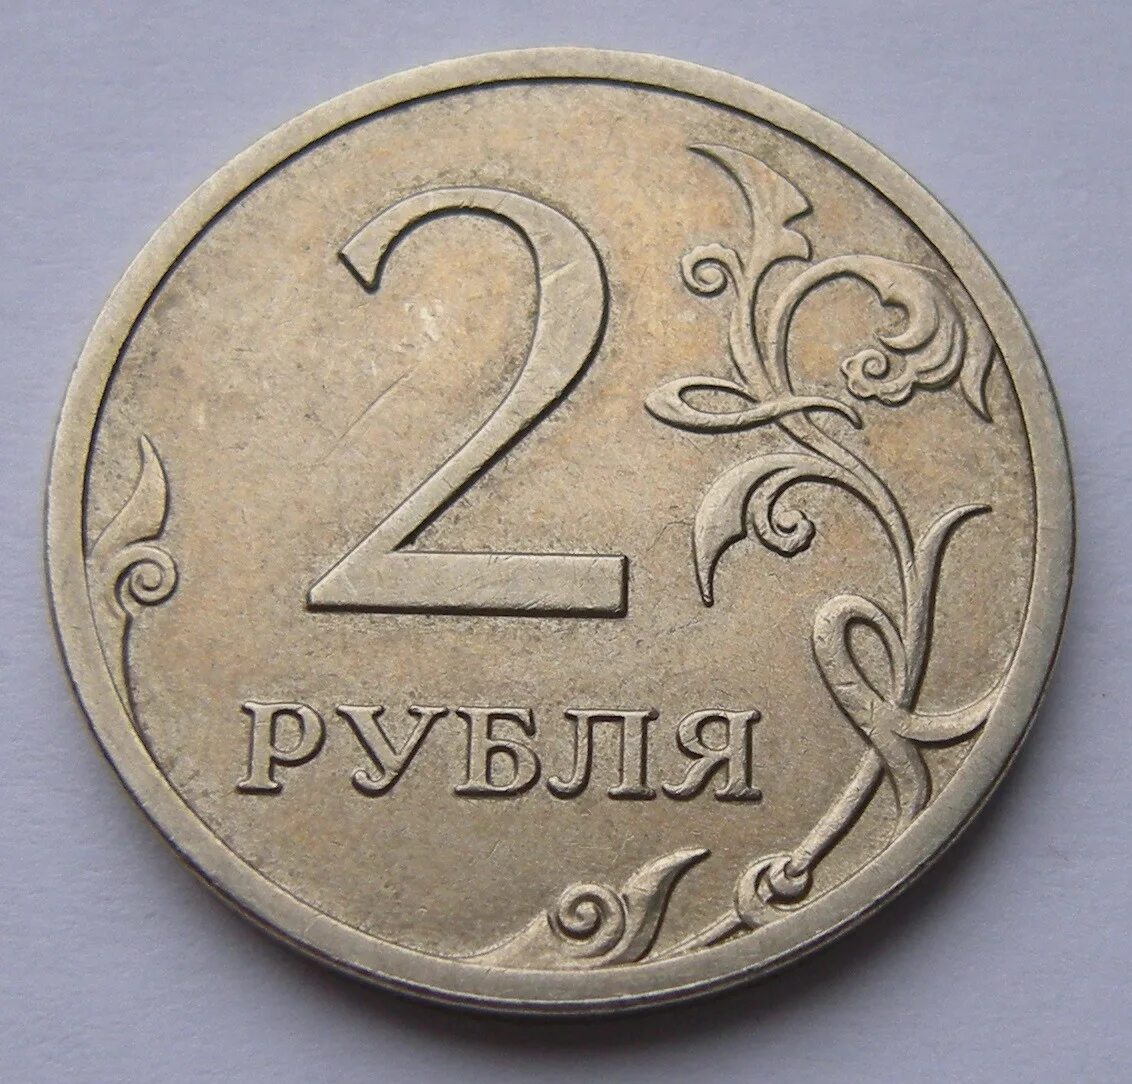 Монета 2 рубля. Монеты 1 2 5 рублей. Изображение монет. Монеты 1 руб 2 руб.